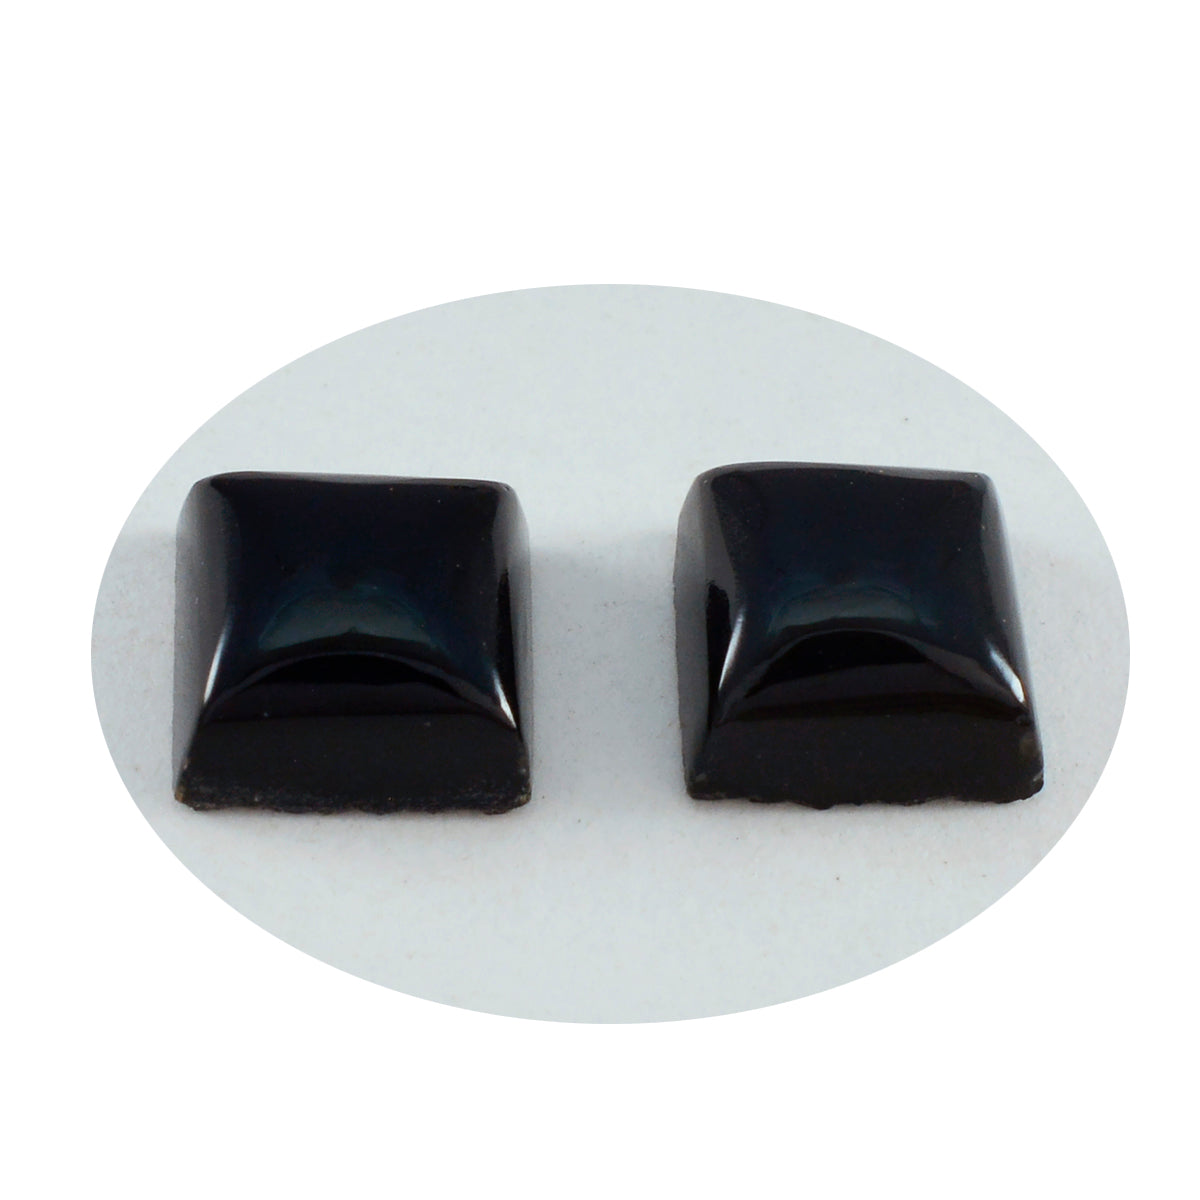 Riyogems 1PC Black Onyx Cabochon 13x13 mm Square Shape superb Quality Stone